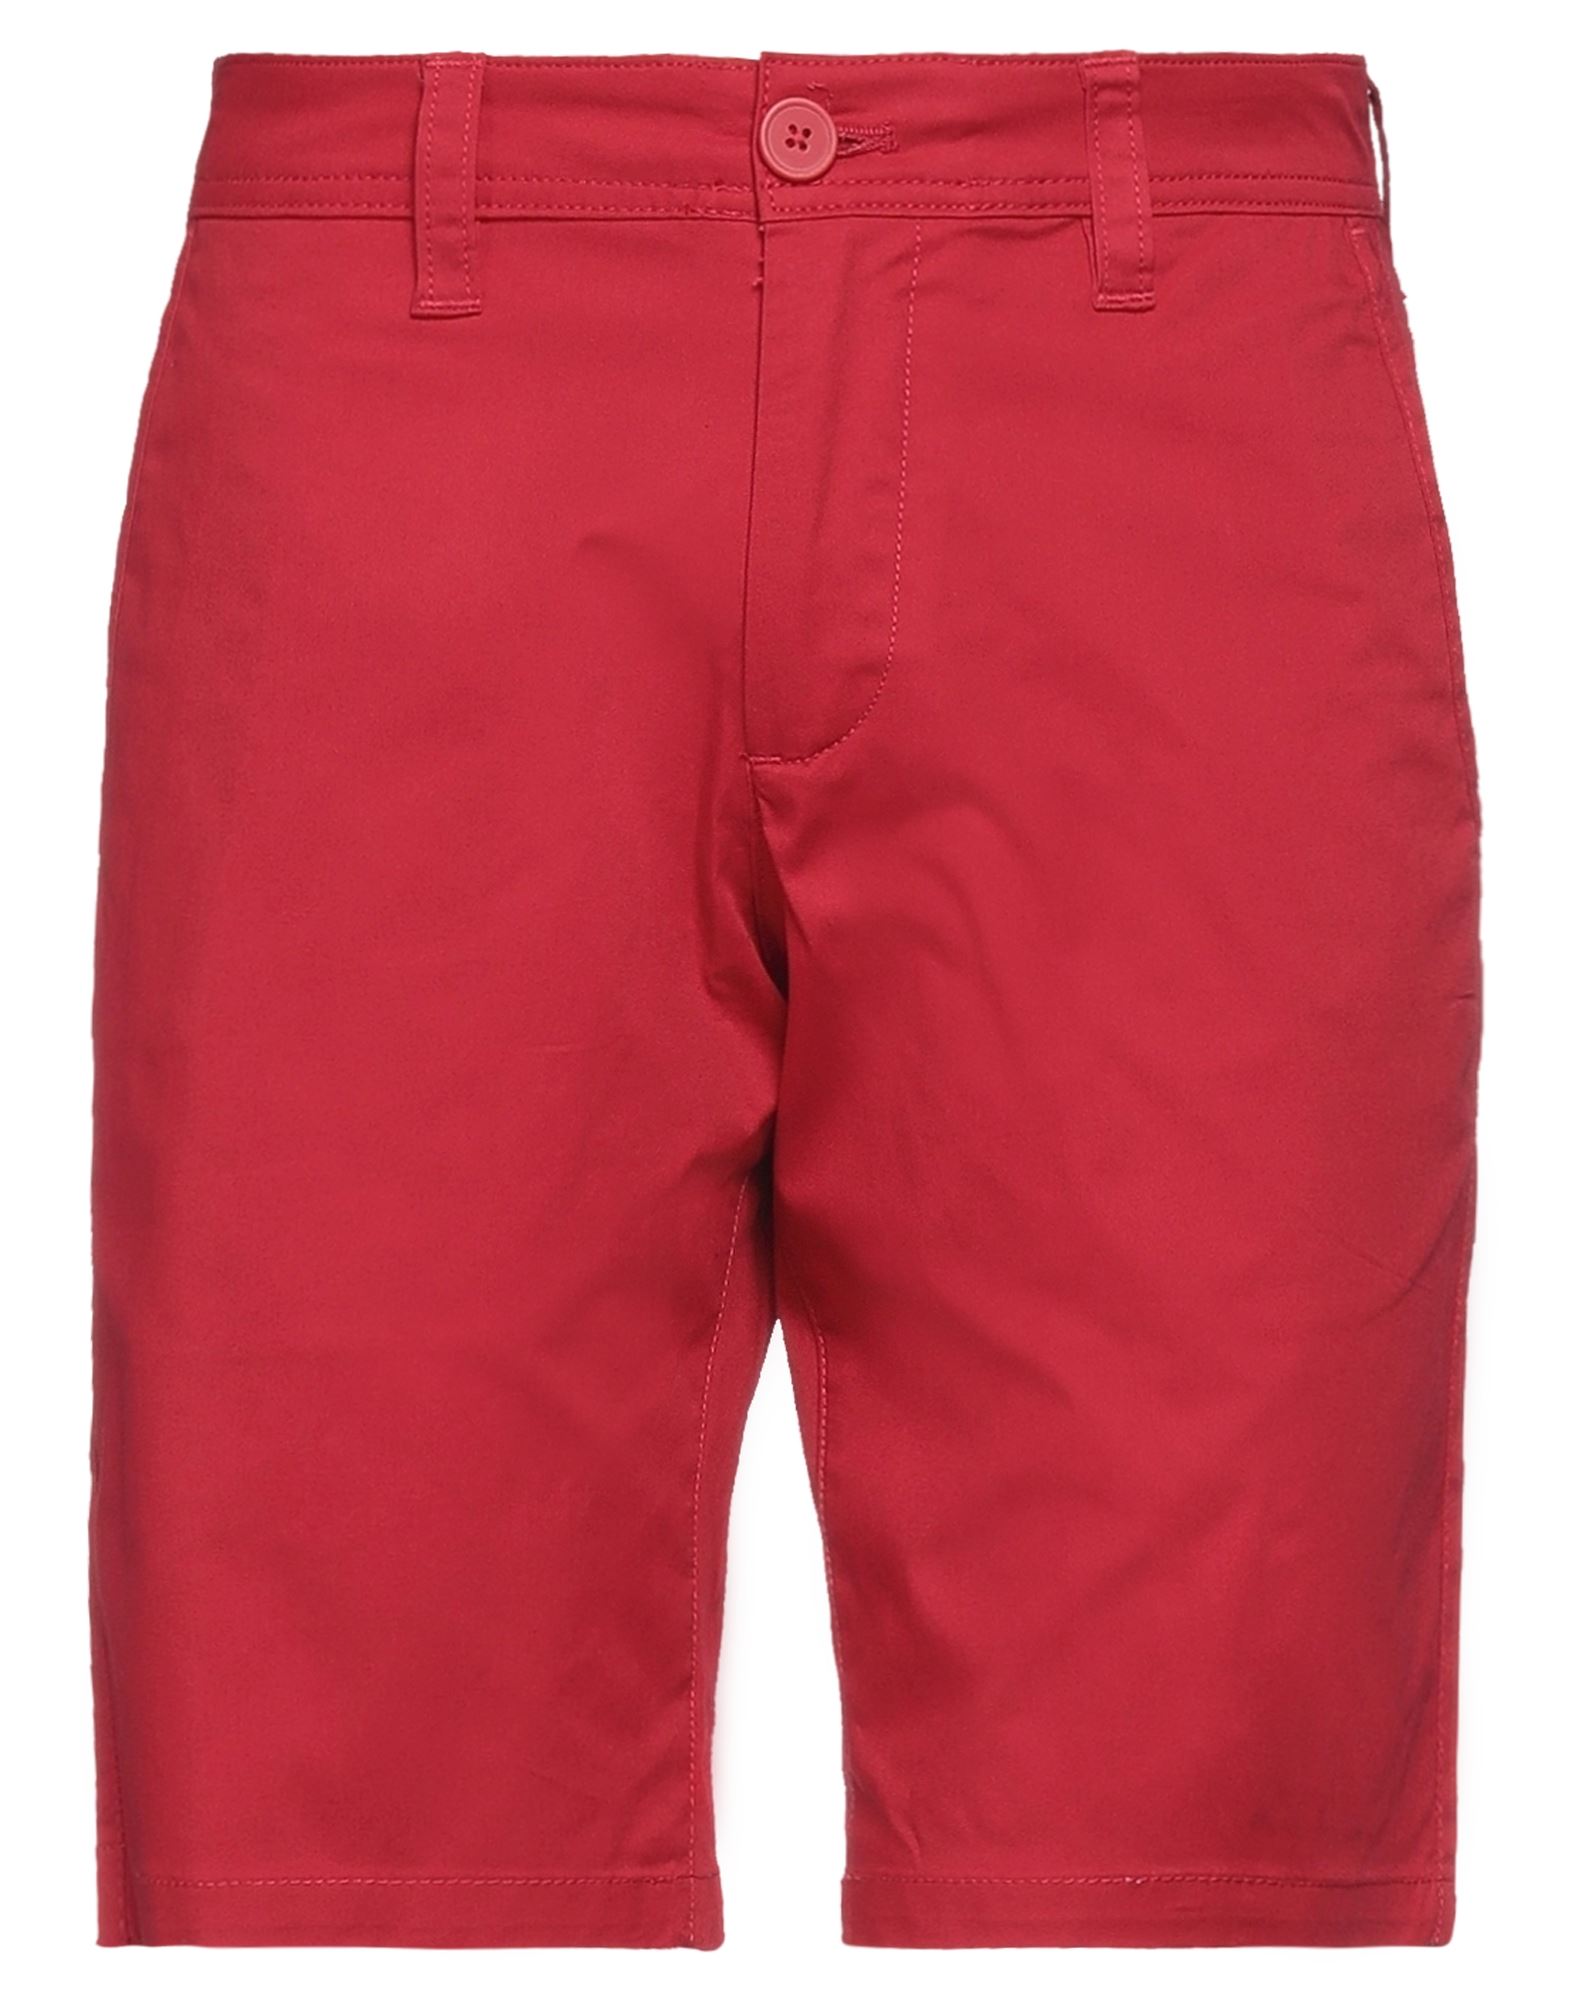 Armani Exchange Man Shorts & Bermuda Shorts Red Size 29 Cotton, Elastane